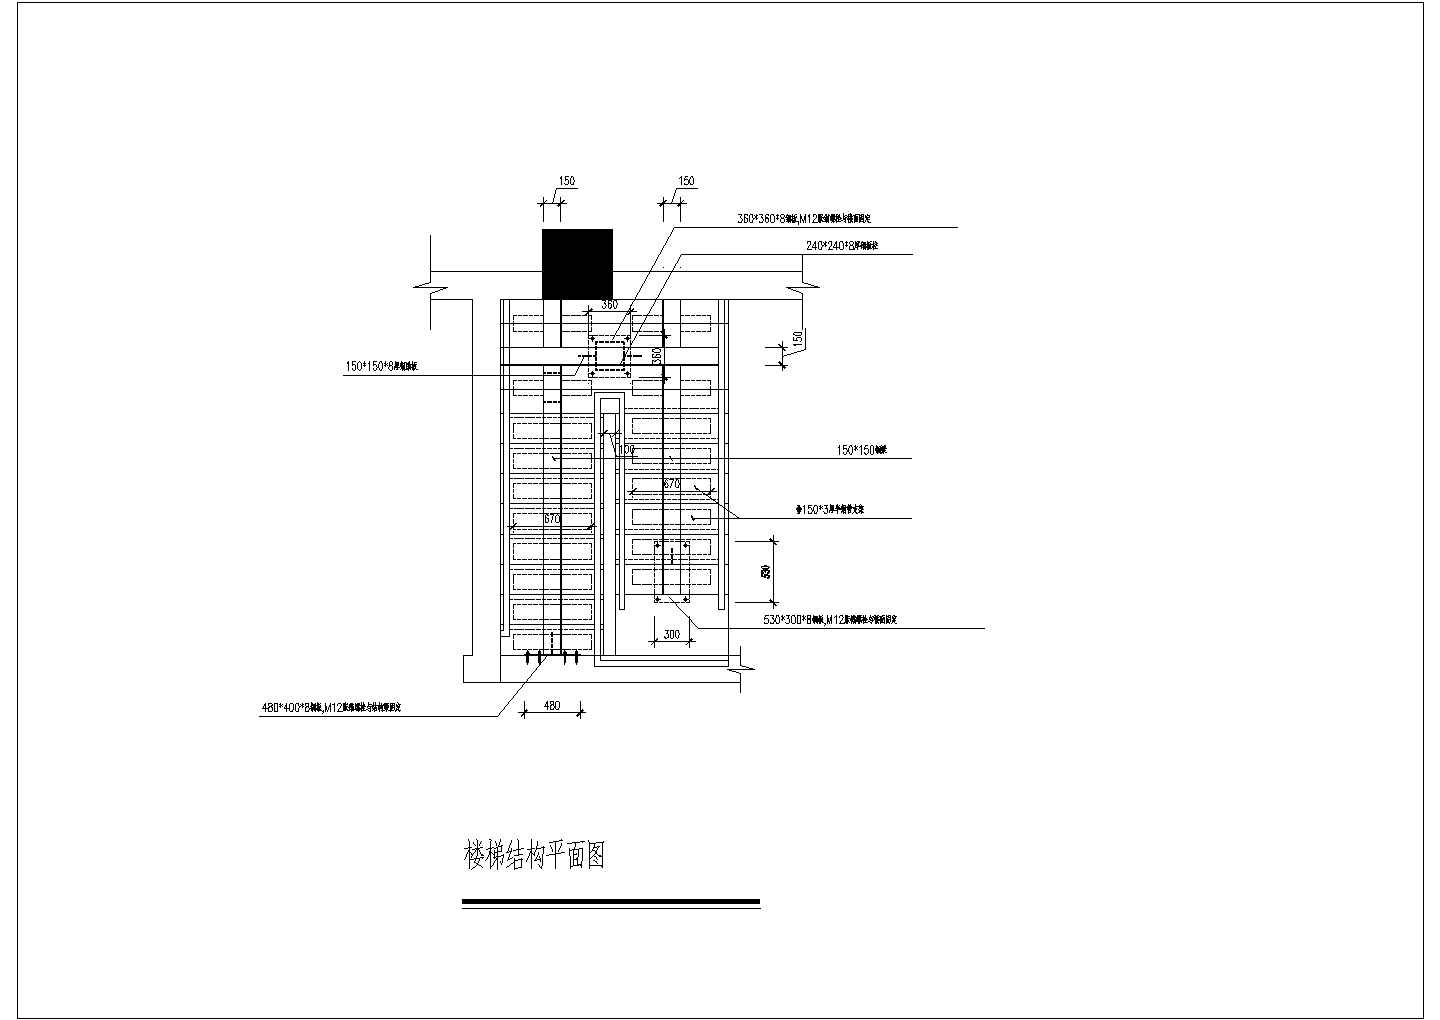 苏州某装修公司素材钢结构楼梯全套设计cad图纸(含楼梯结构平面图)